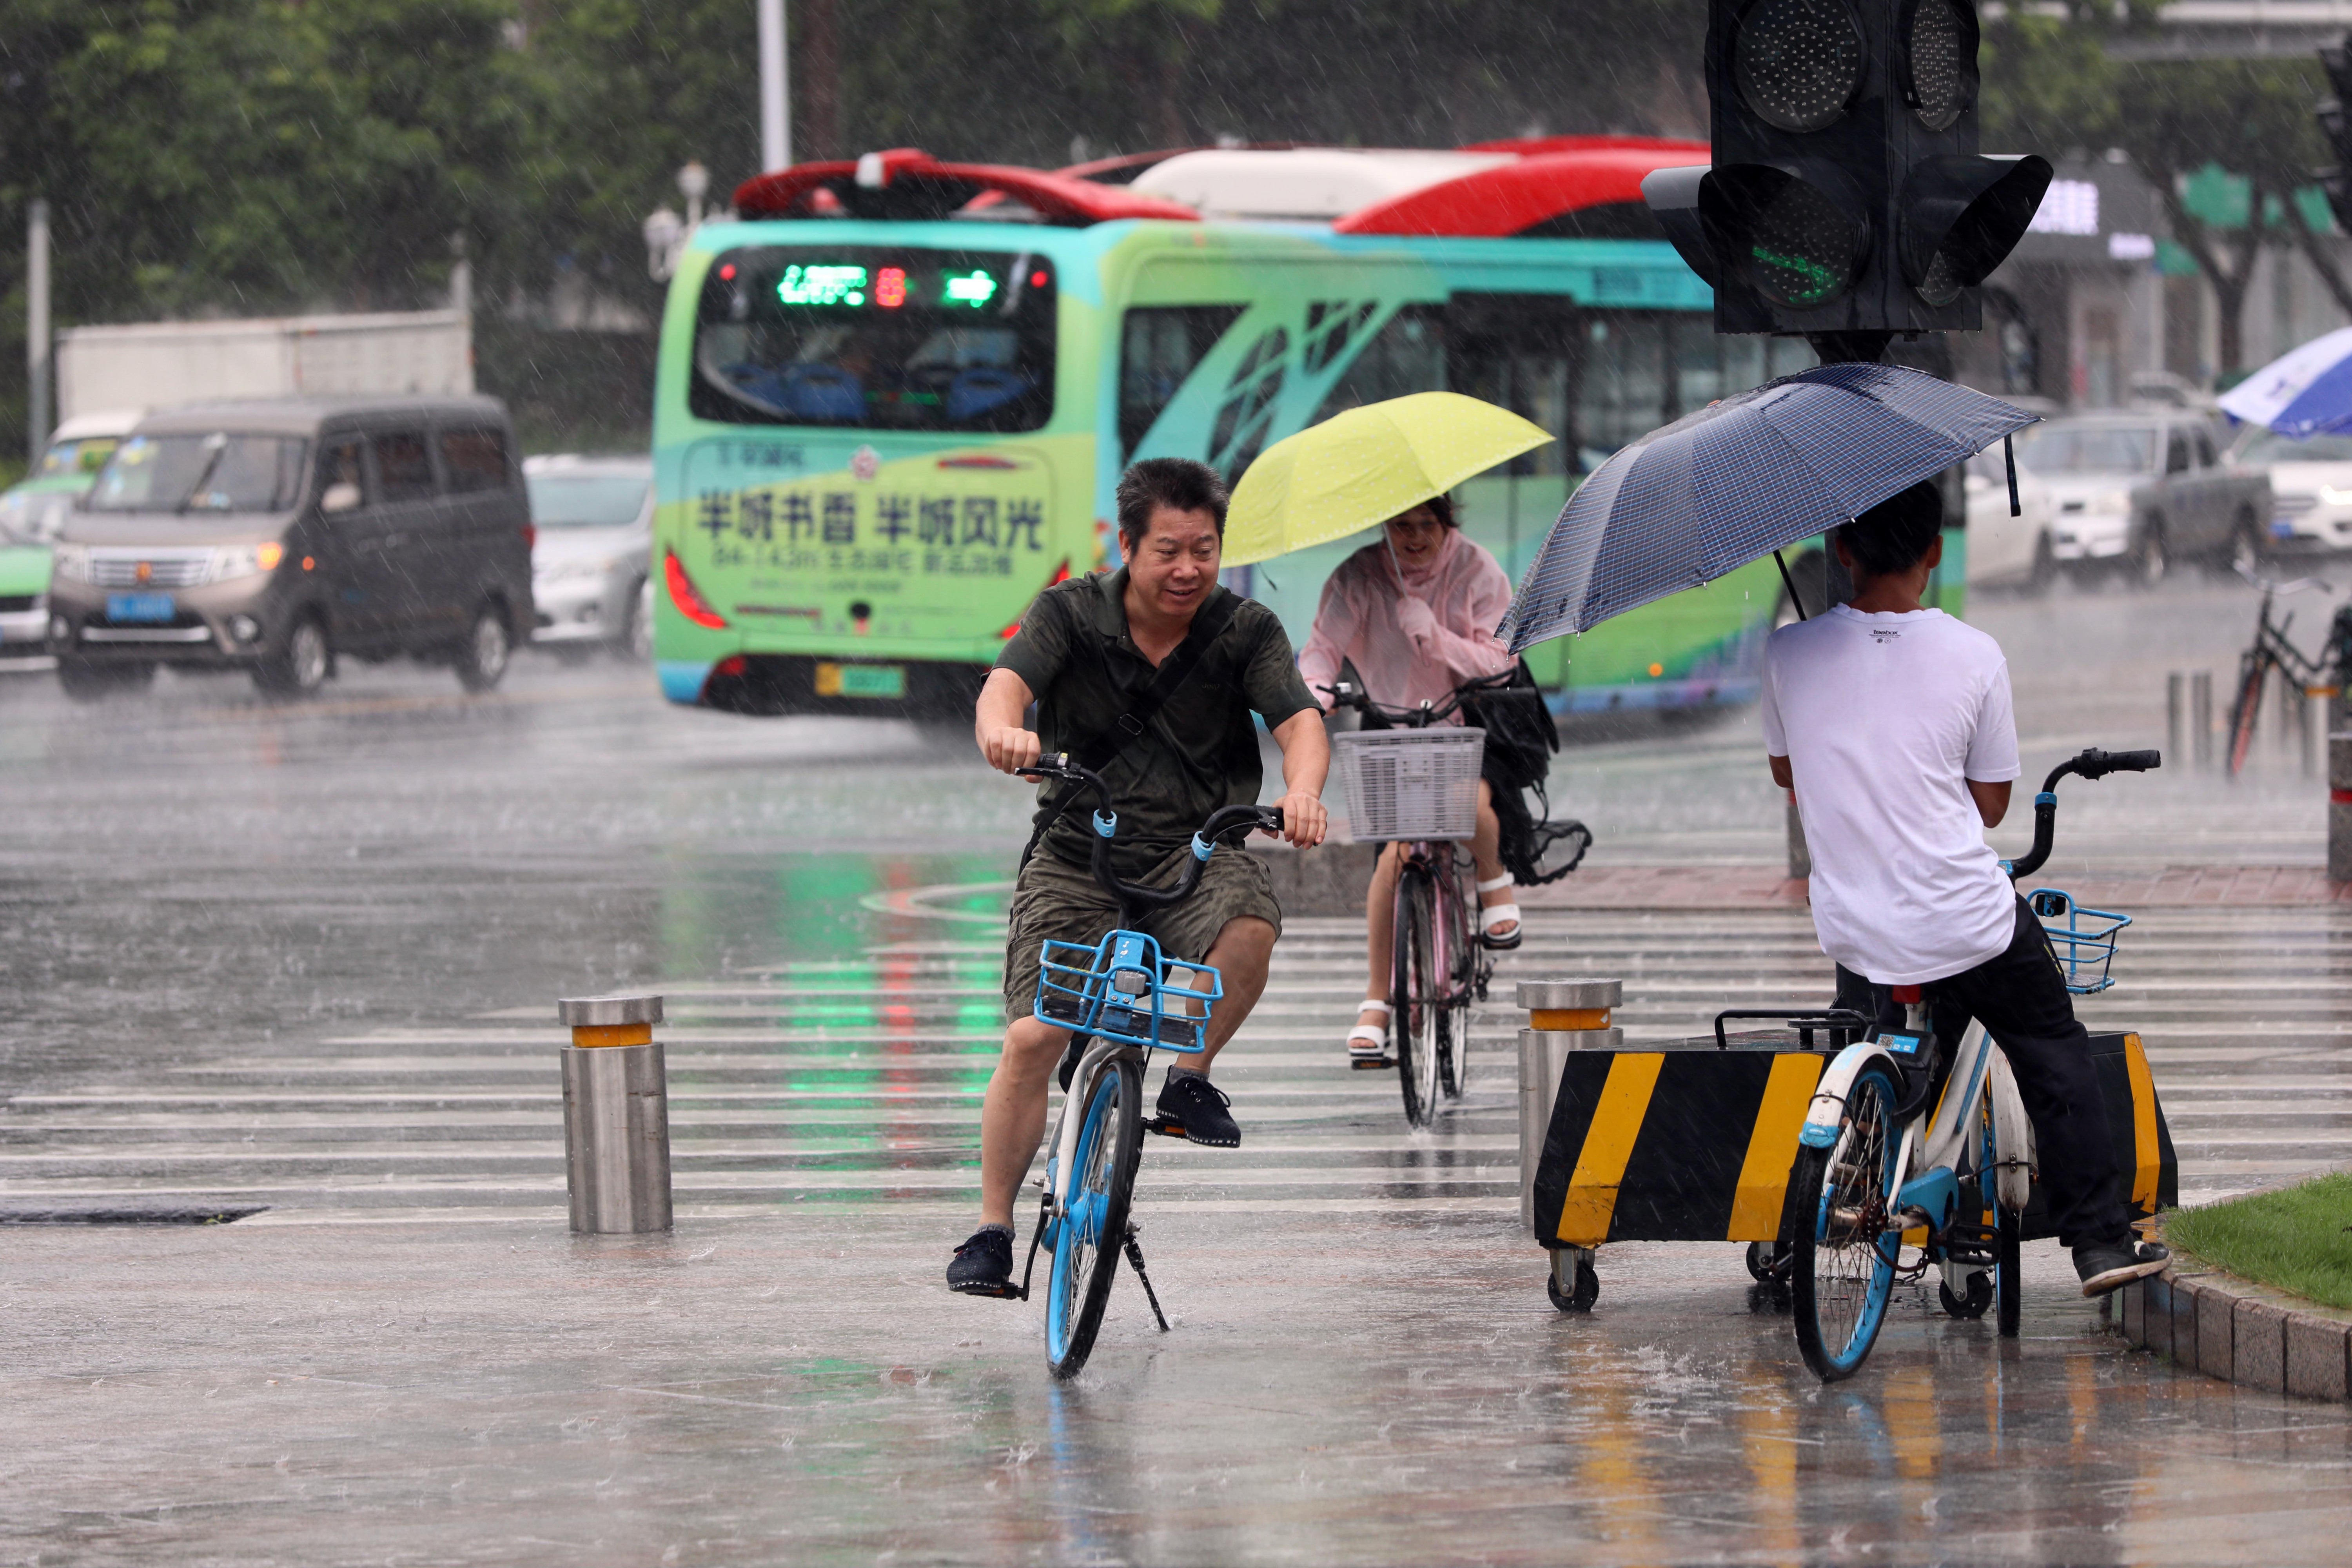 男子在雨中骑着单车快速前行